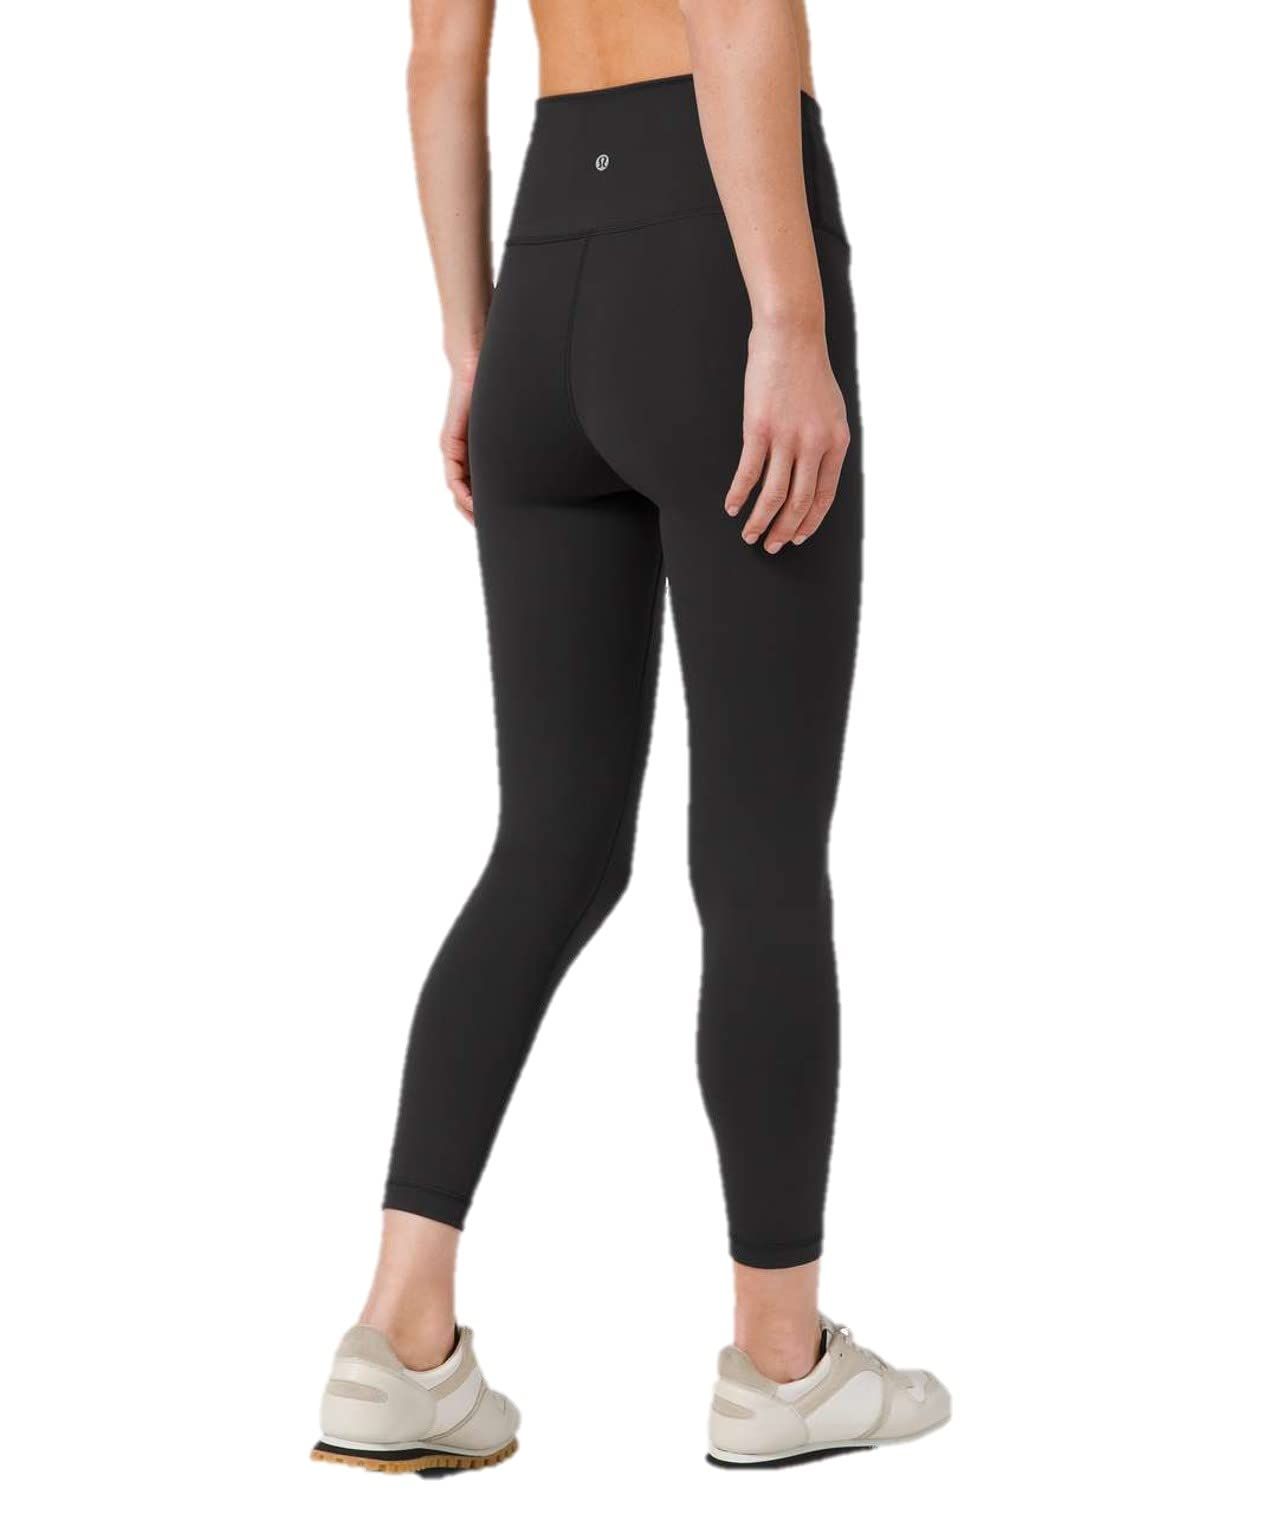 Share more than 212 best high waisted black leggings best